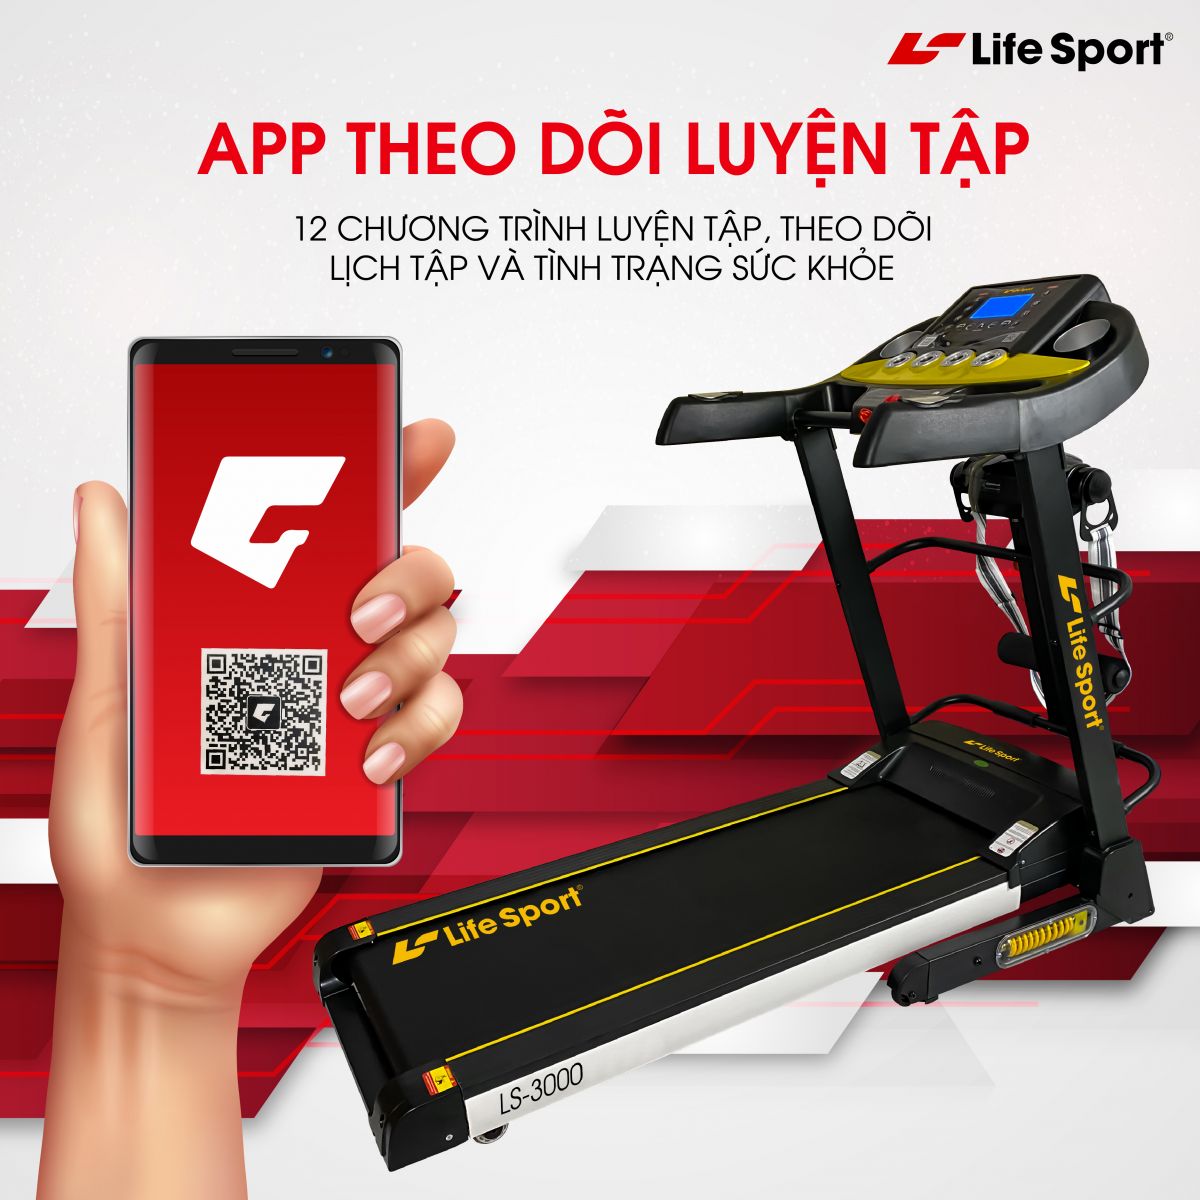 Máy chạy bộ LS-3000 | Lifesport app theo dõi luyện tập